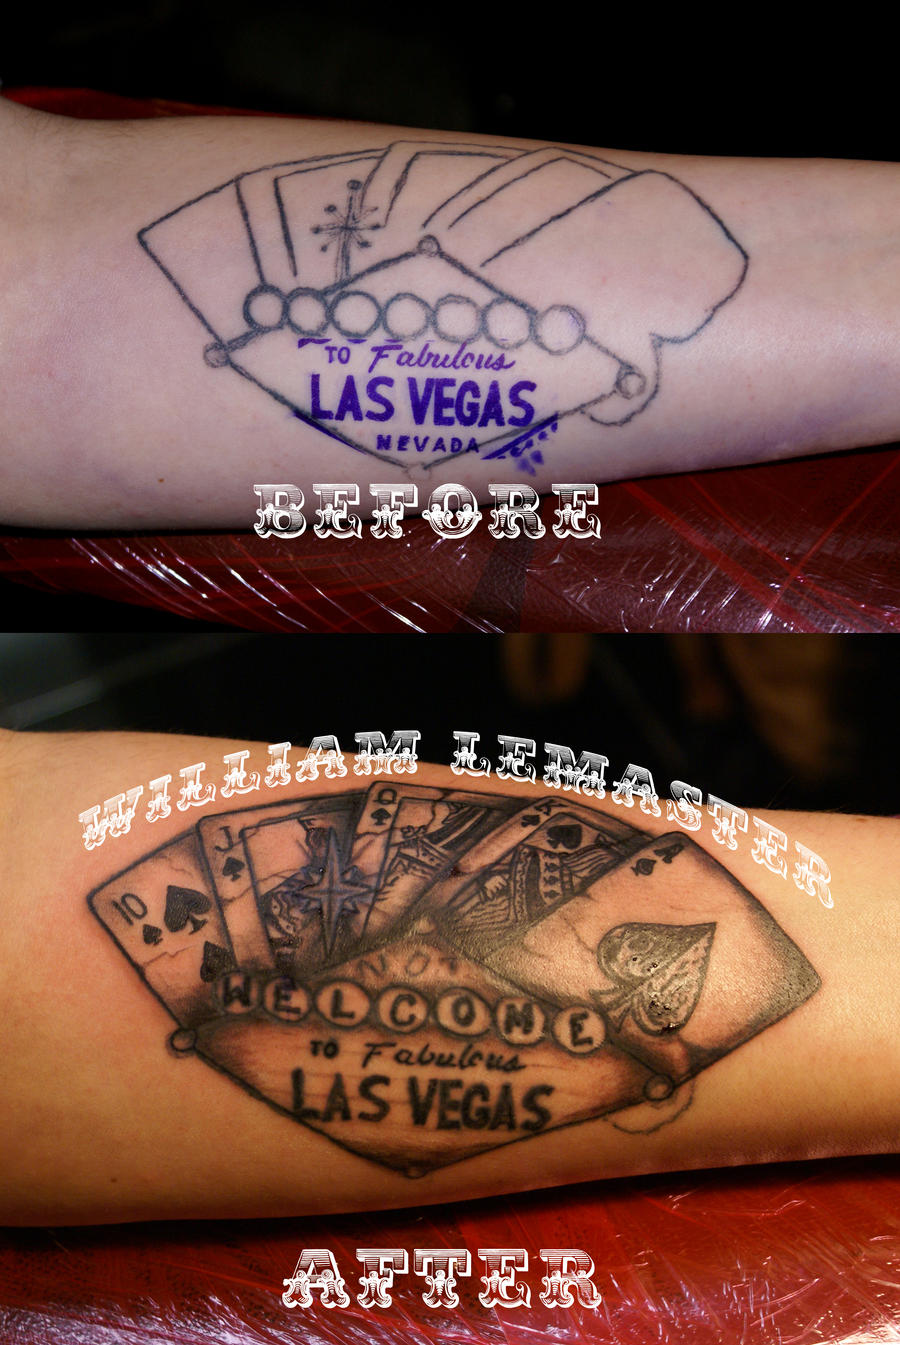 Hovedsagelig Fra Adskillelse Tattoo Fix - Not Welcome to Las Vegas by lemaster99705 on DeviantArt